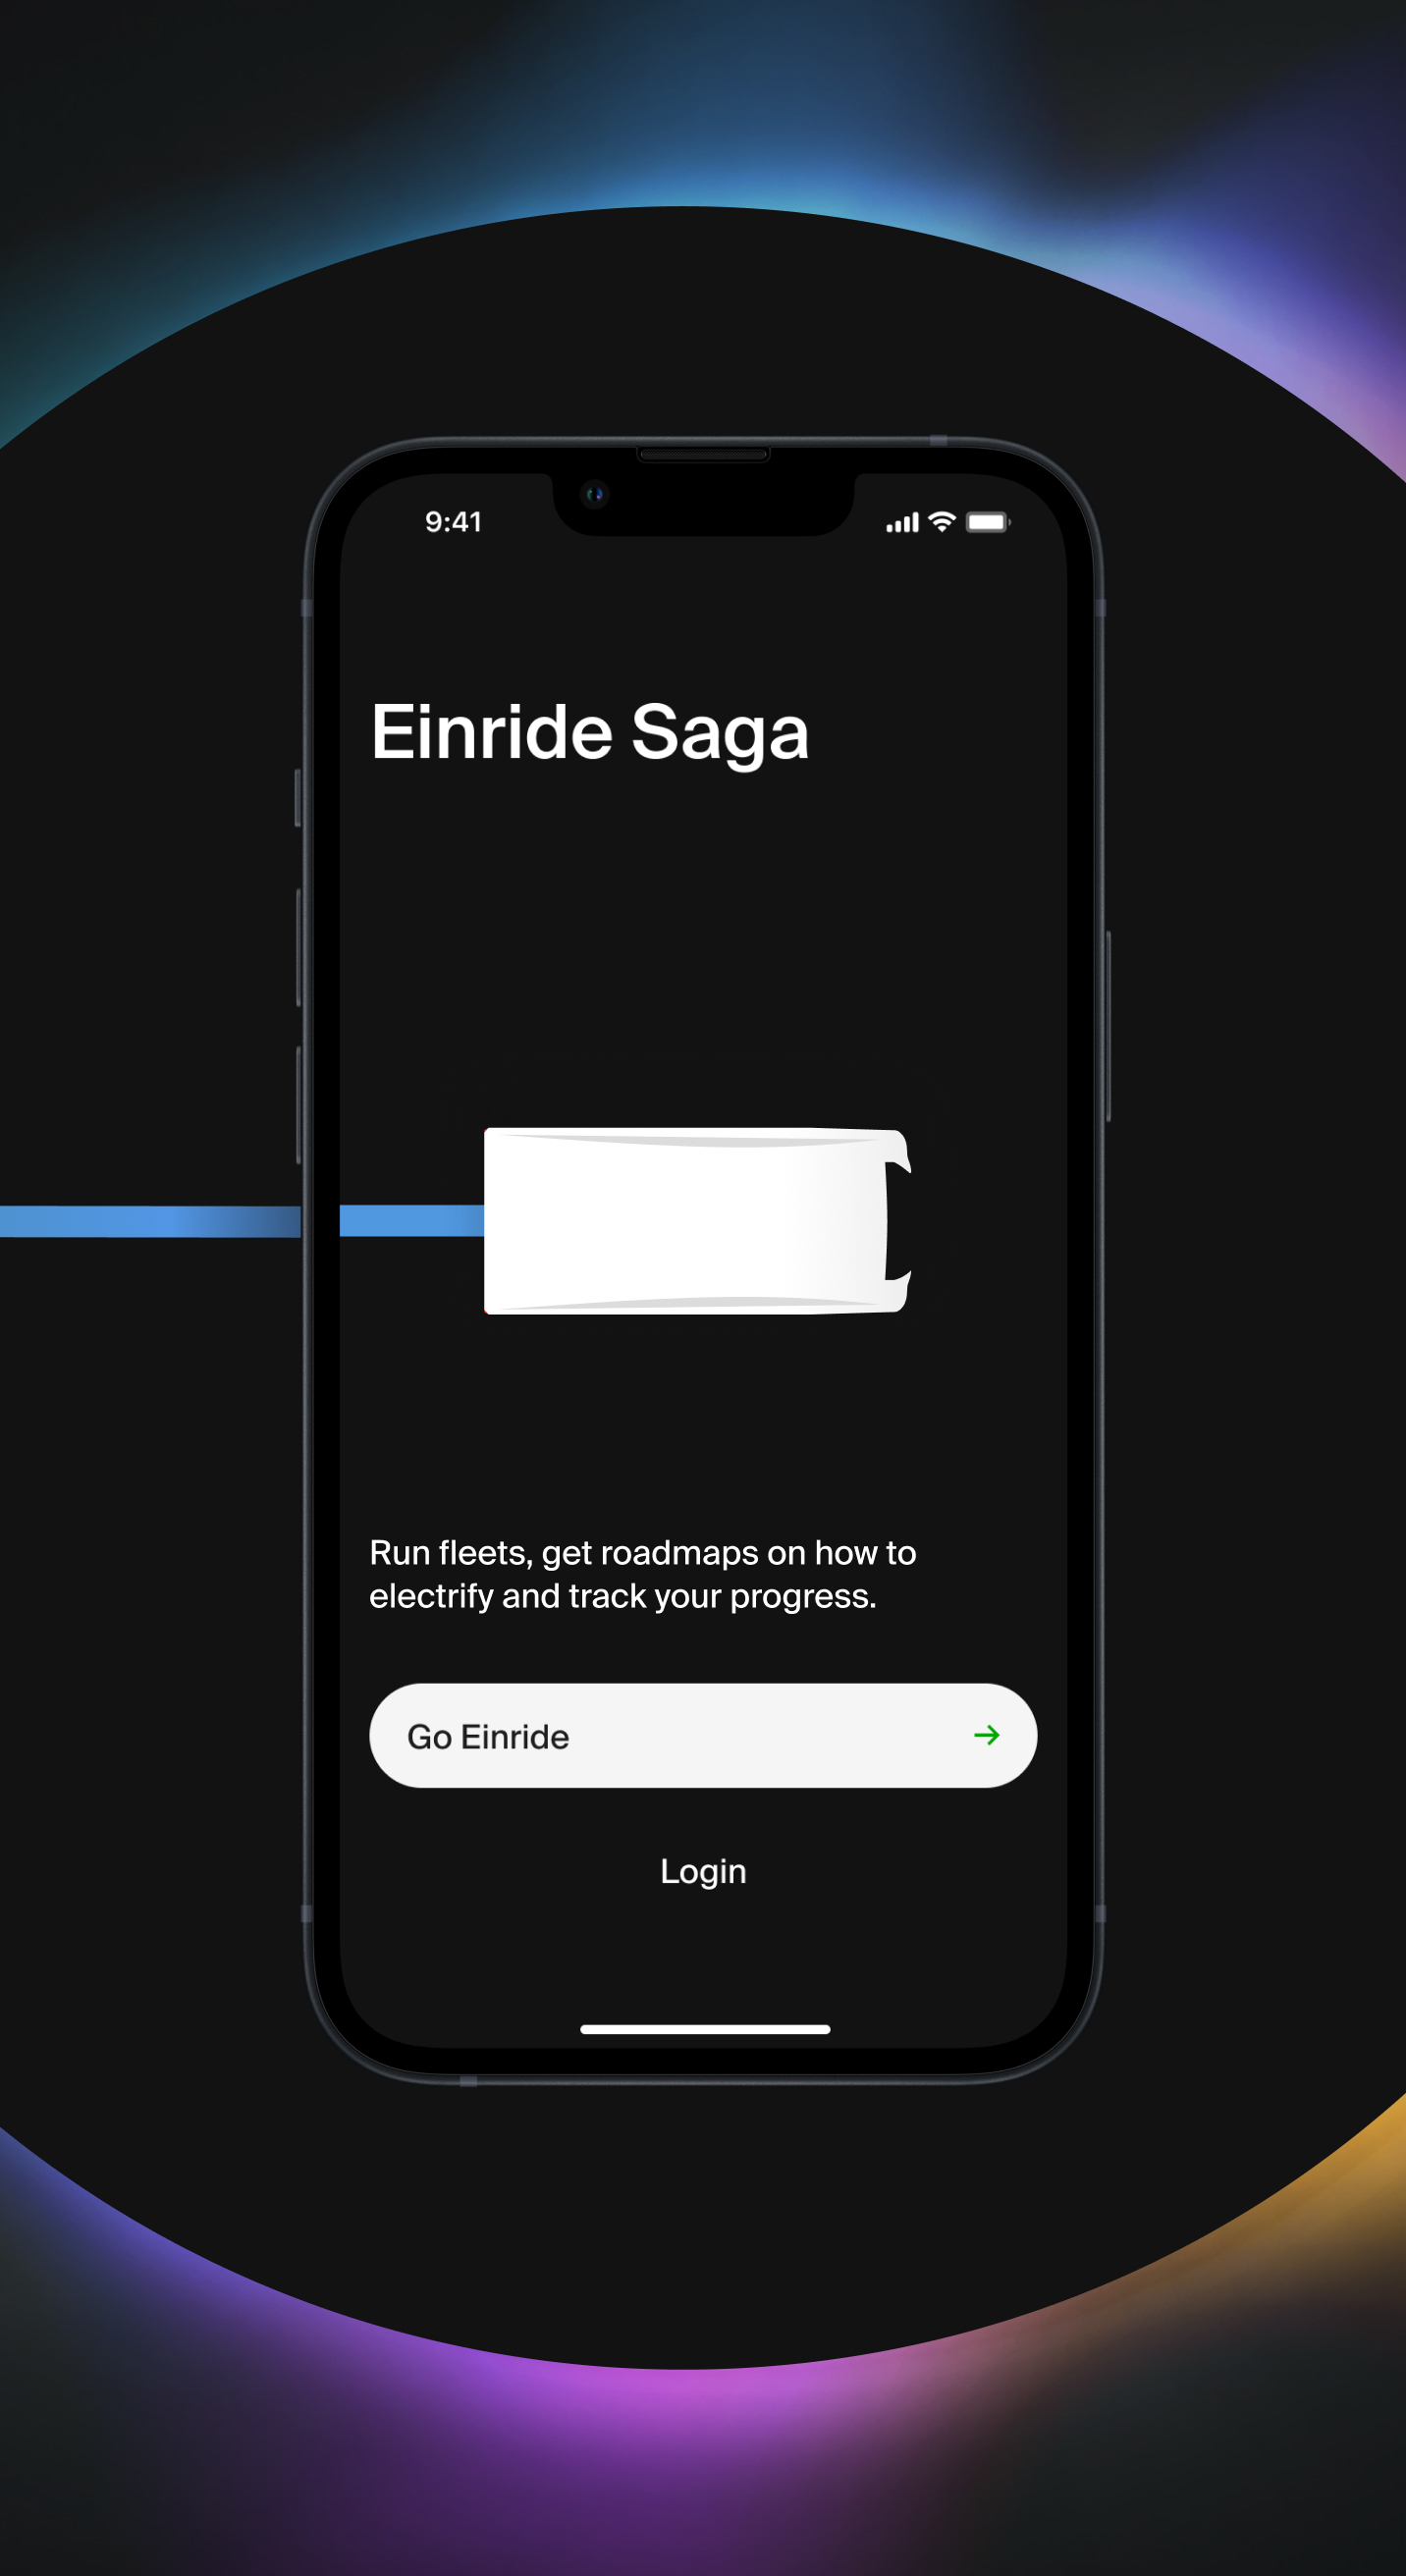 Einride Saga app running on a phone.